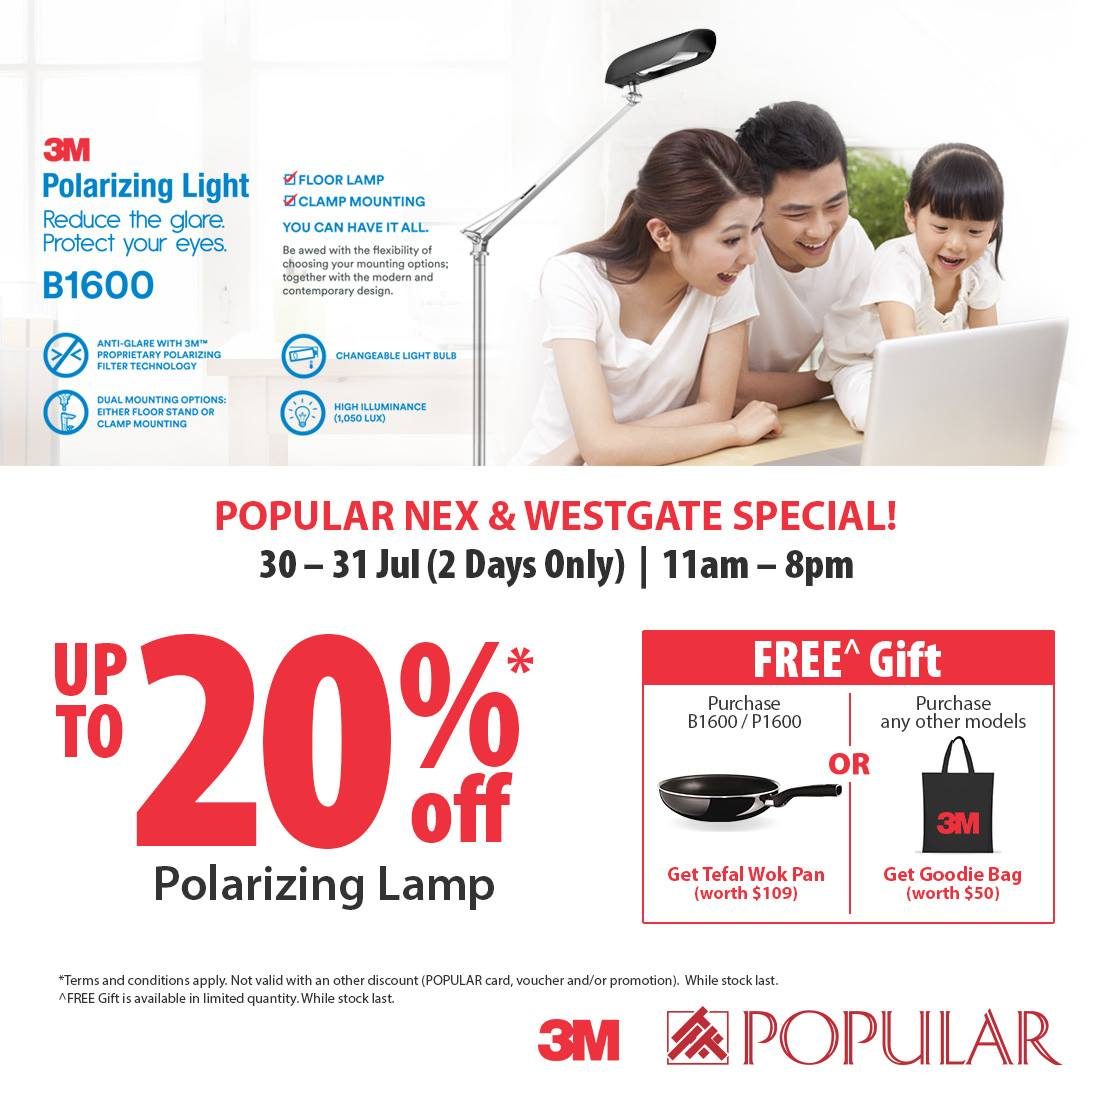 Popular Polarizing Lamp Singapore Promotion 30 to 31 Jul 2016